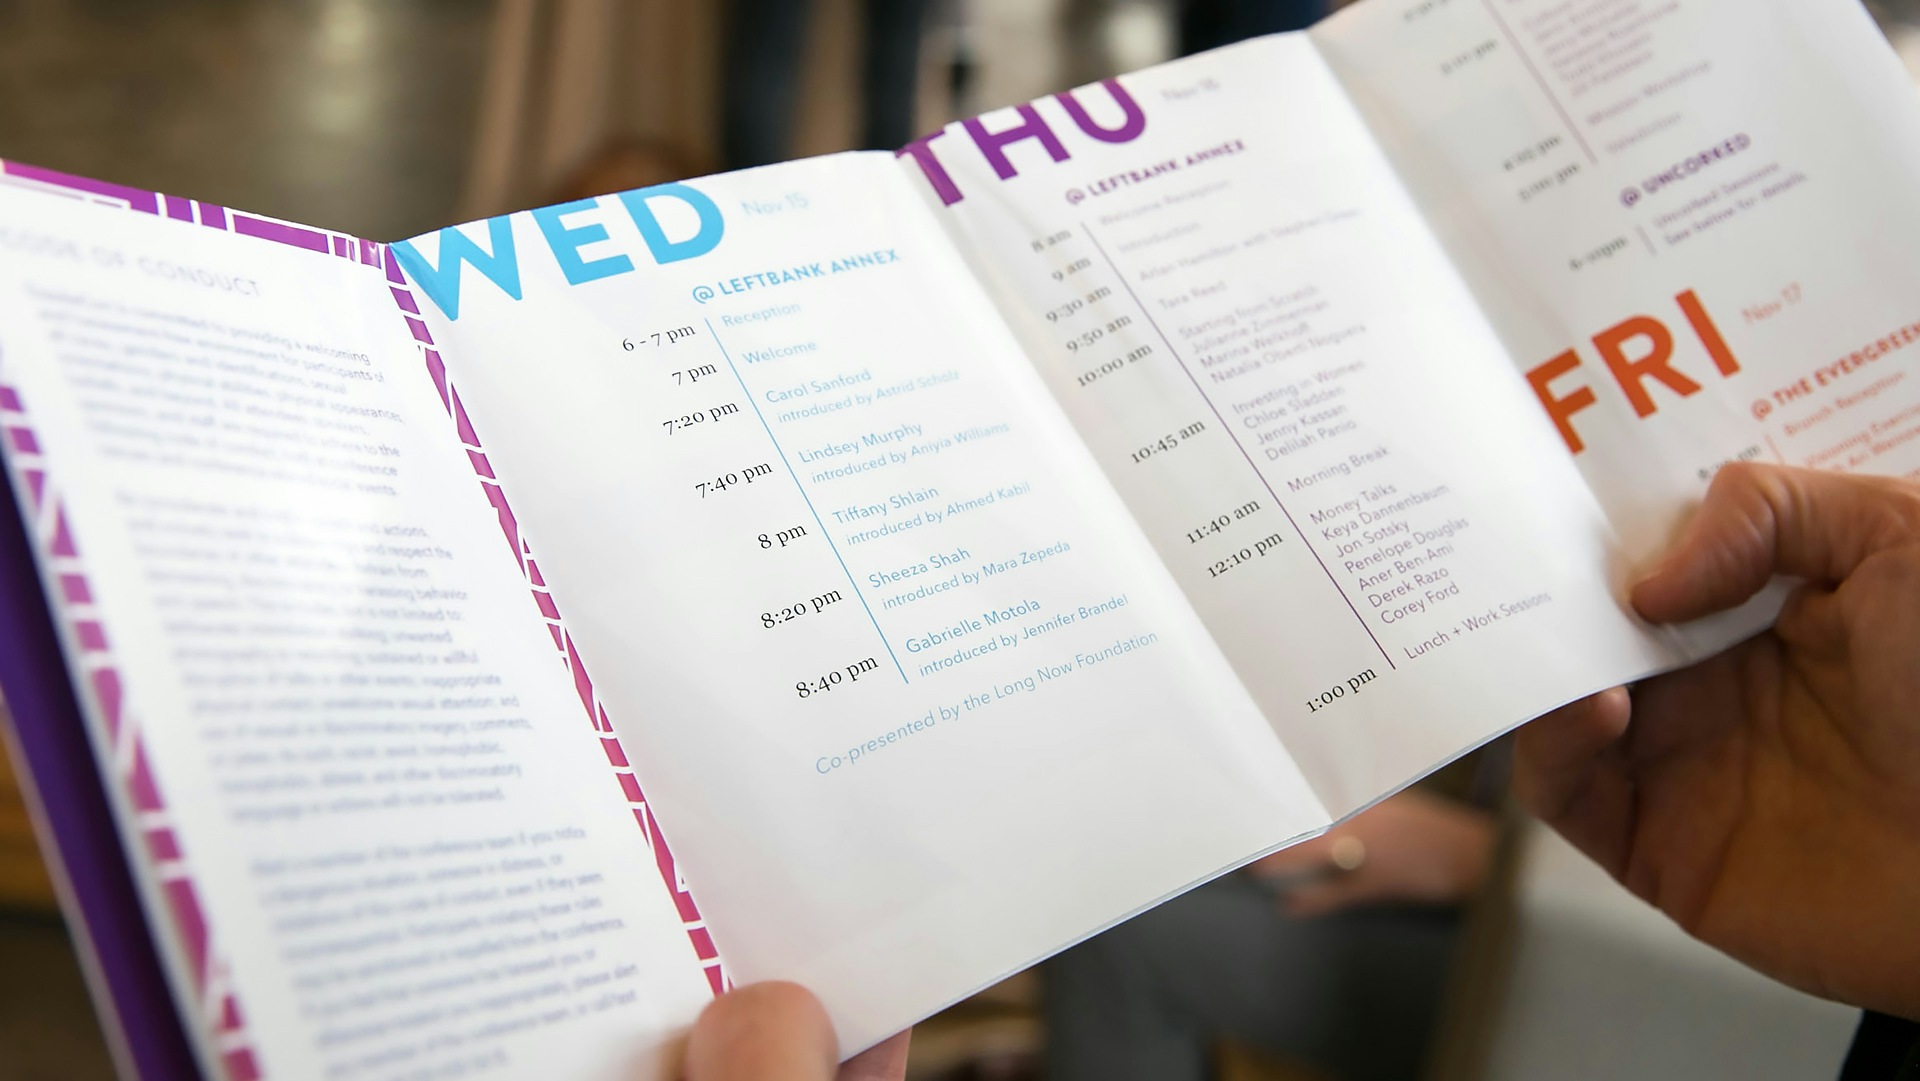 The 2017 DazzleCon brochure showing the event agenda